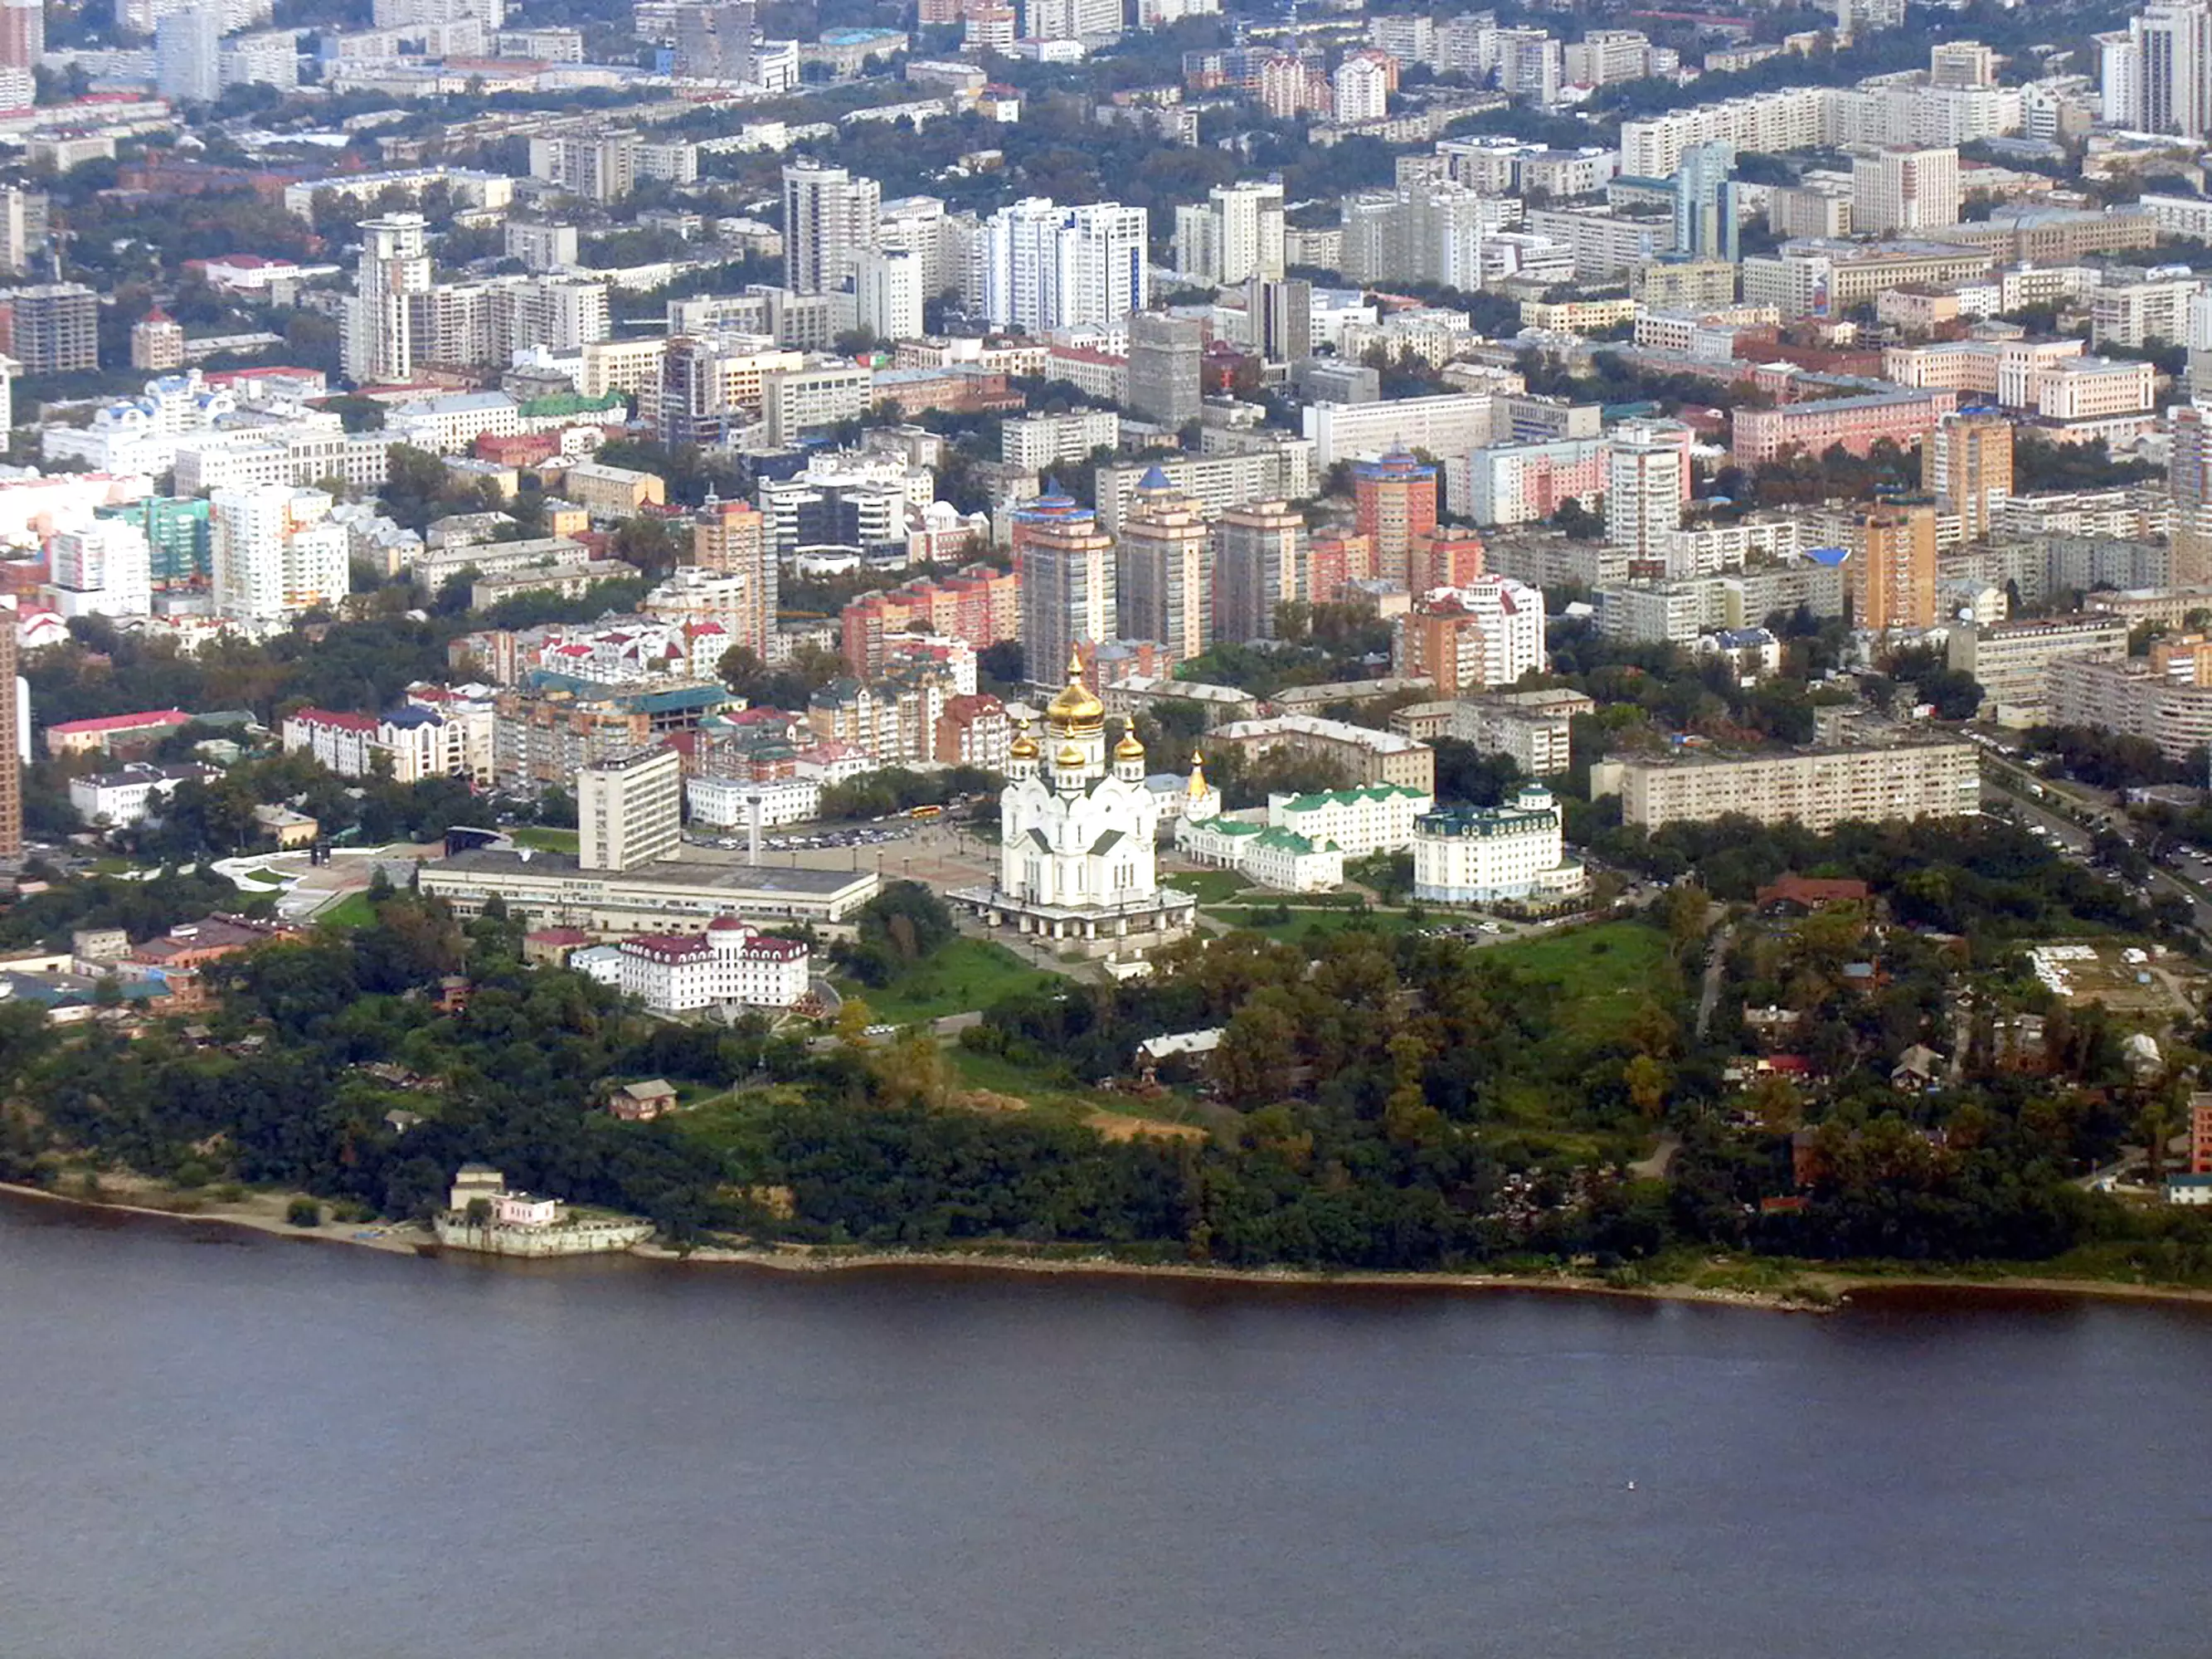 The city of Khabarovsk.